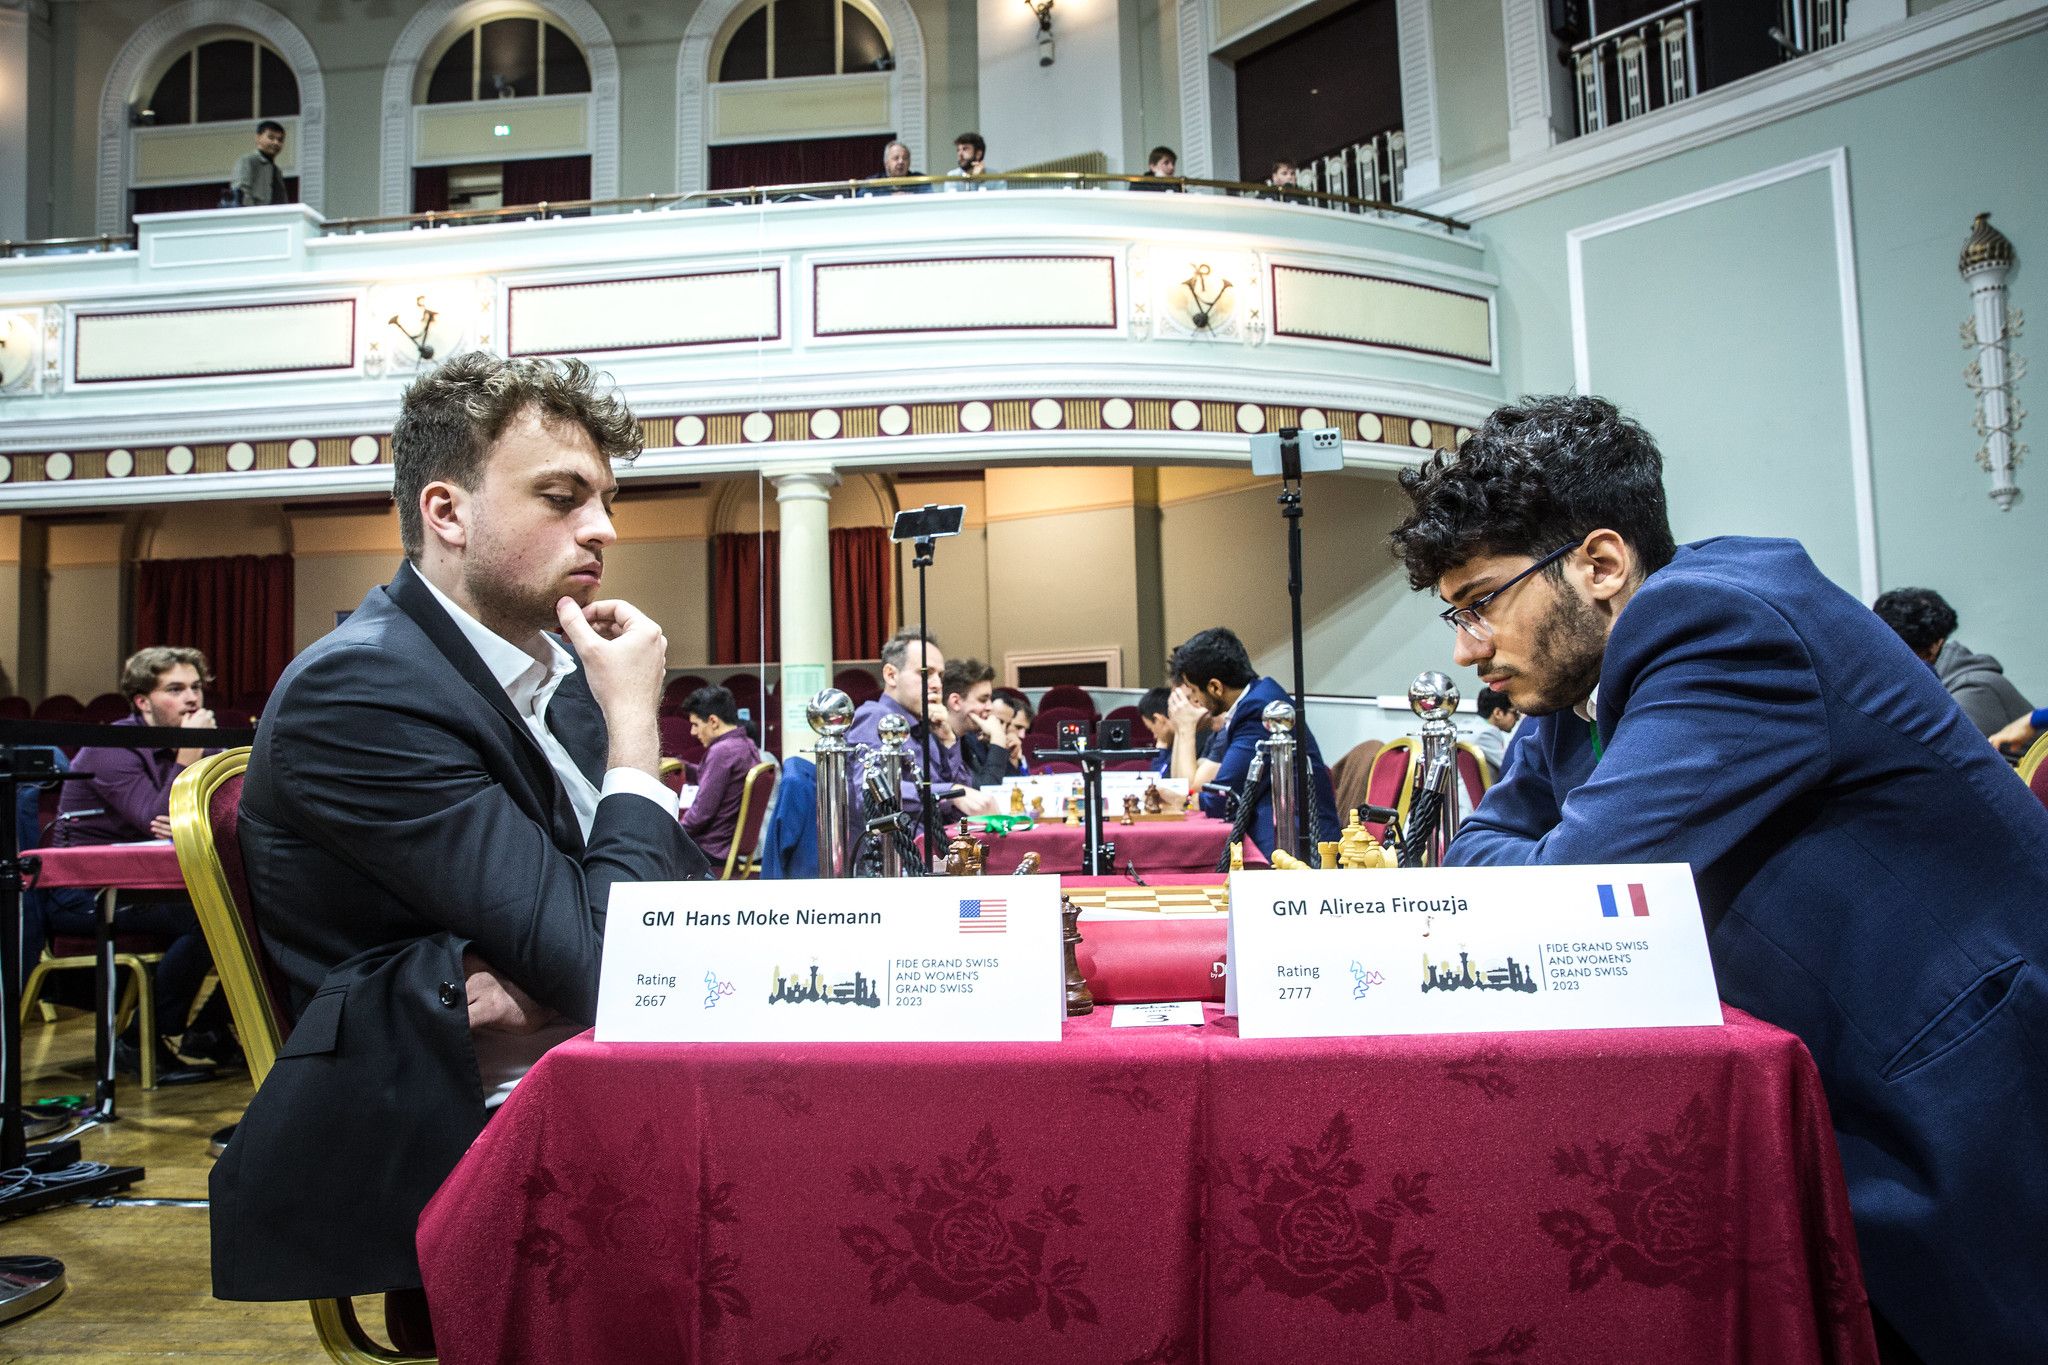 FIDE Grand Swiss 2023: Esipenko Leads In Open, 4-Way Tie In Women's - Chess .com